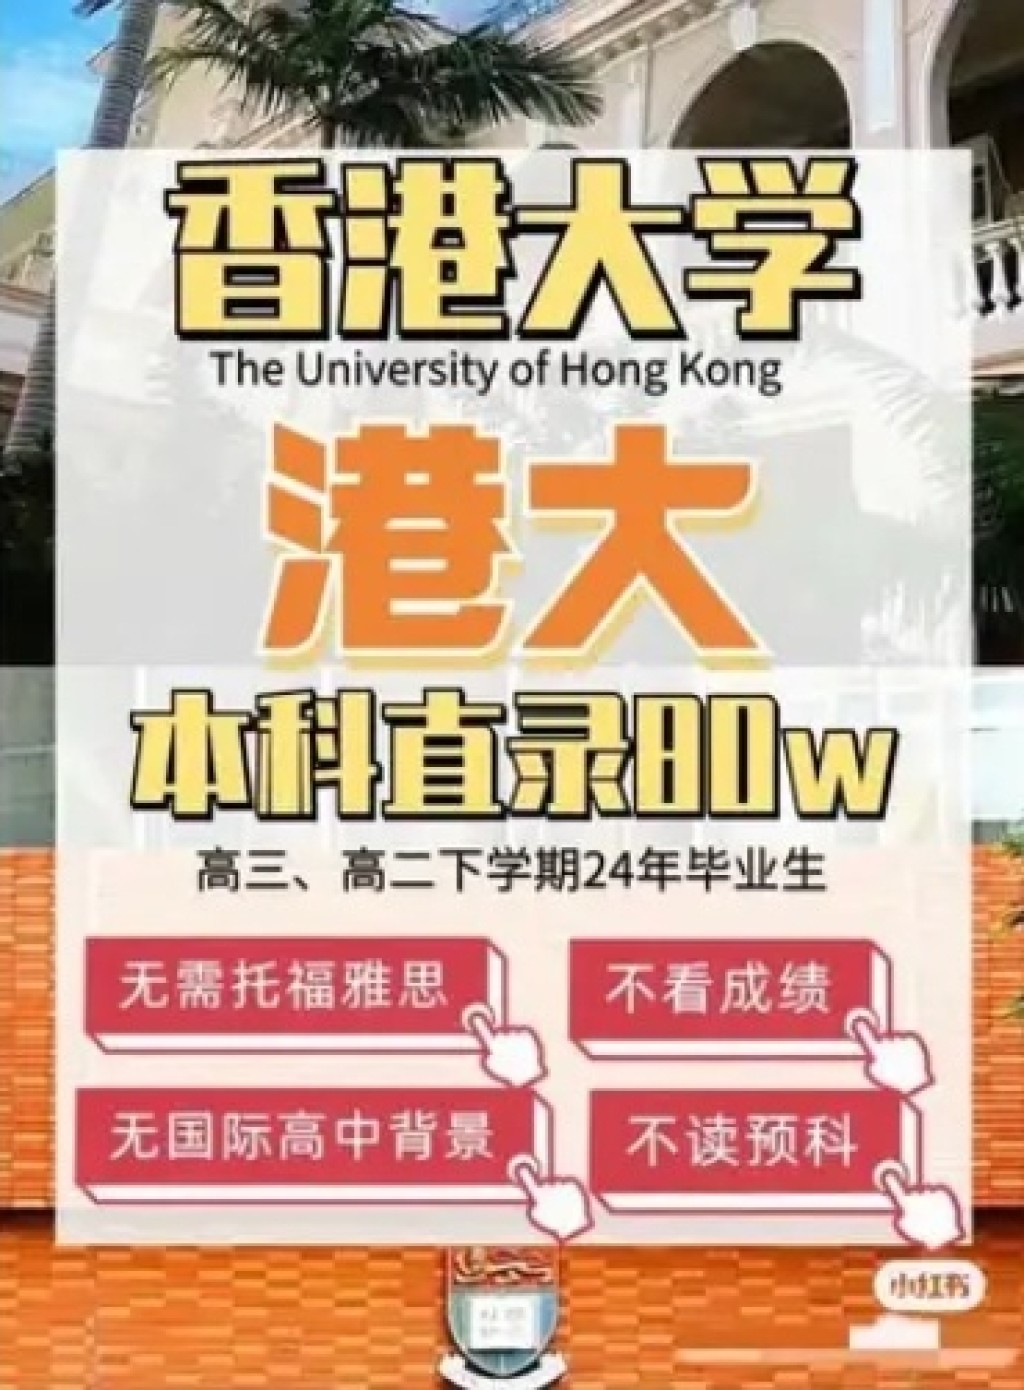 甚至有本科直录香港大学，“无需托福雅思成绩、无需国际高中背景、无需读预科，申请费高达80万元”。